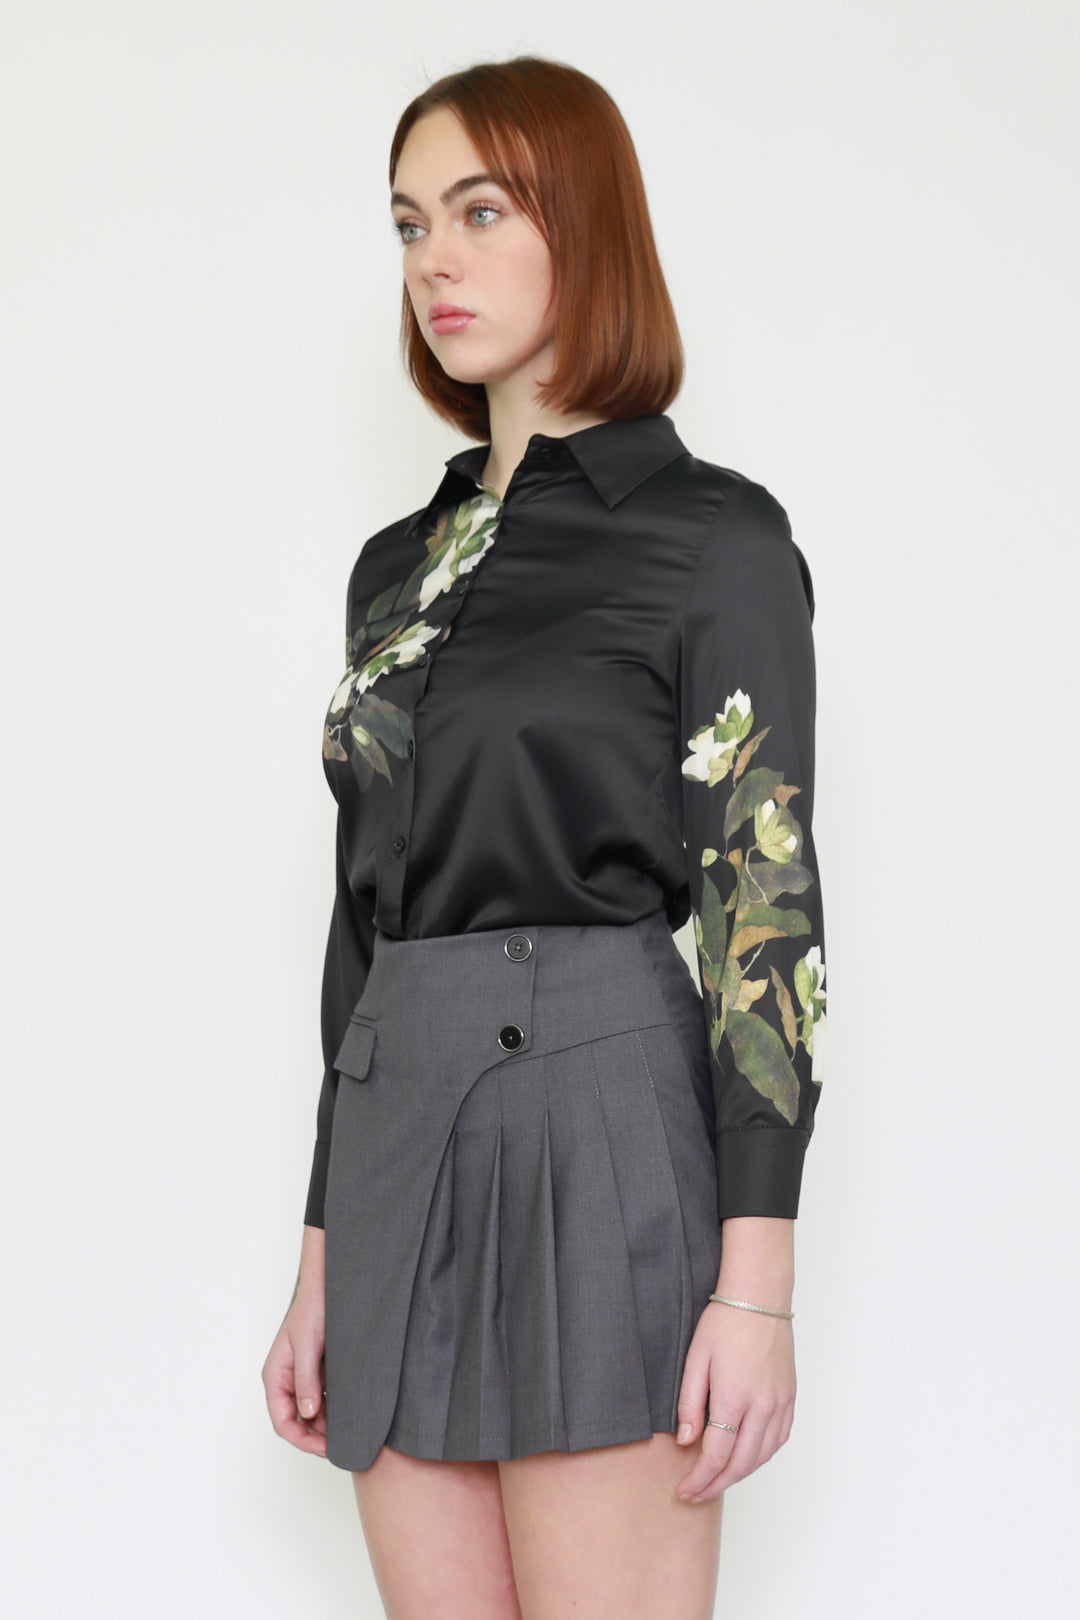 Camisa negra con estampado floral de lirio de seda